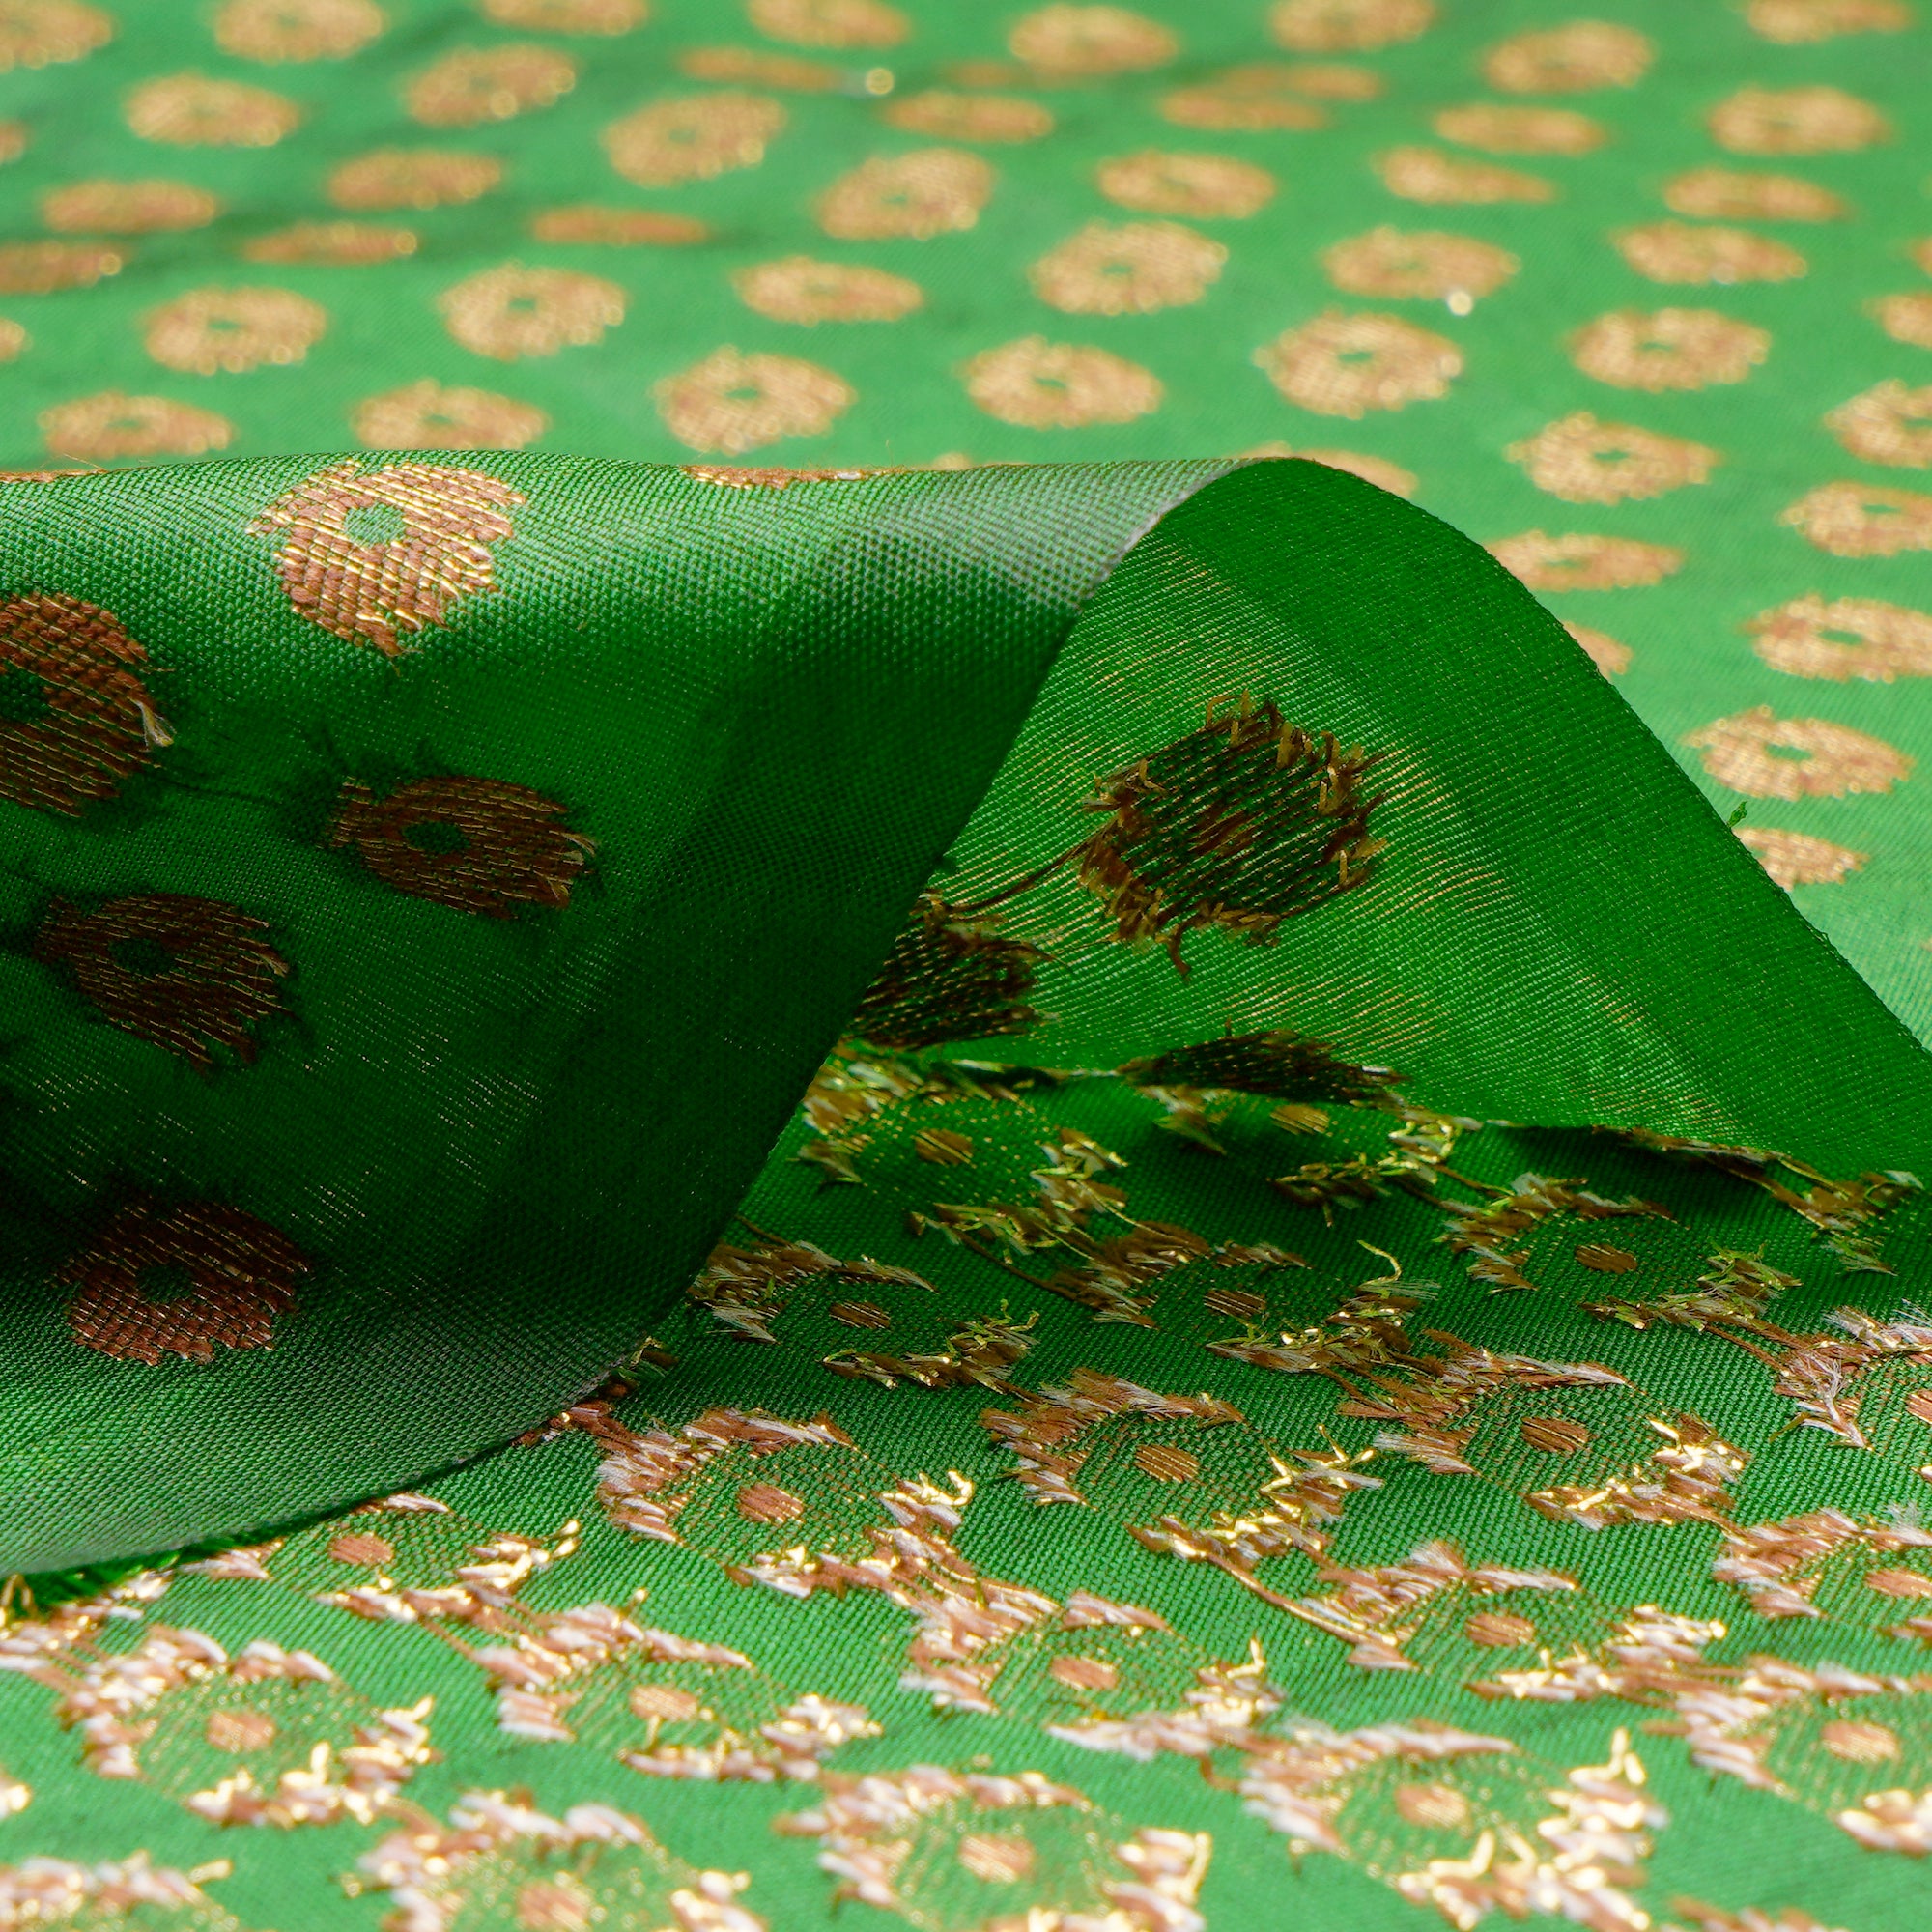 Green Booti Pattern Blended Banarasi Brocade Fabric